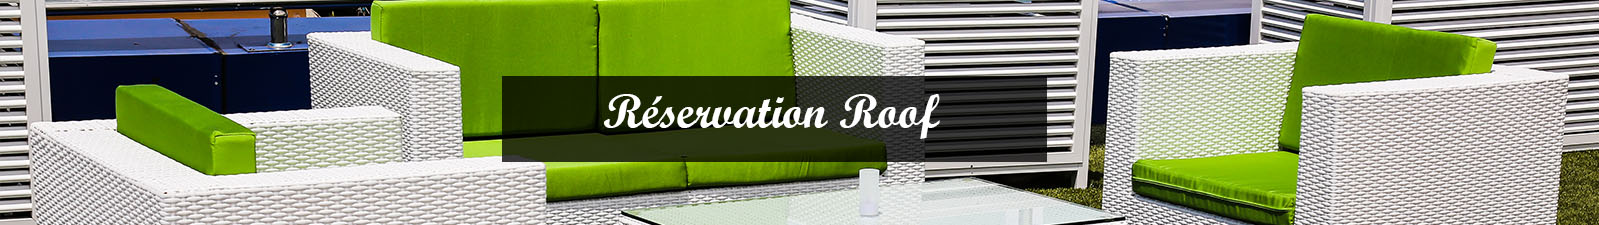 reservation-roof-12.jpg